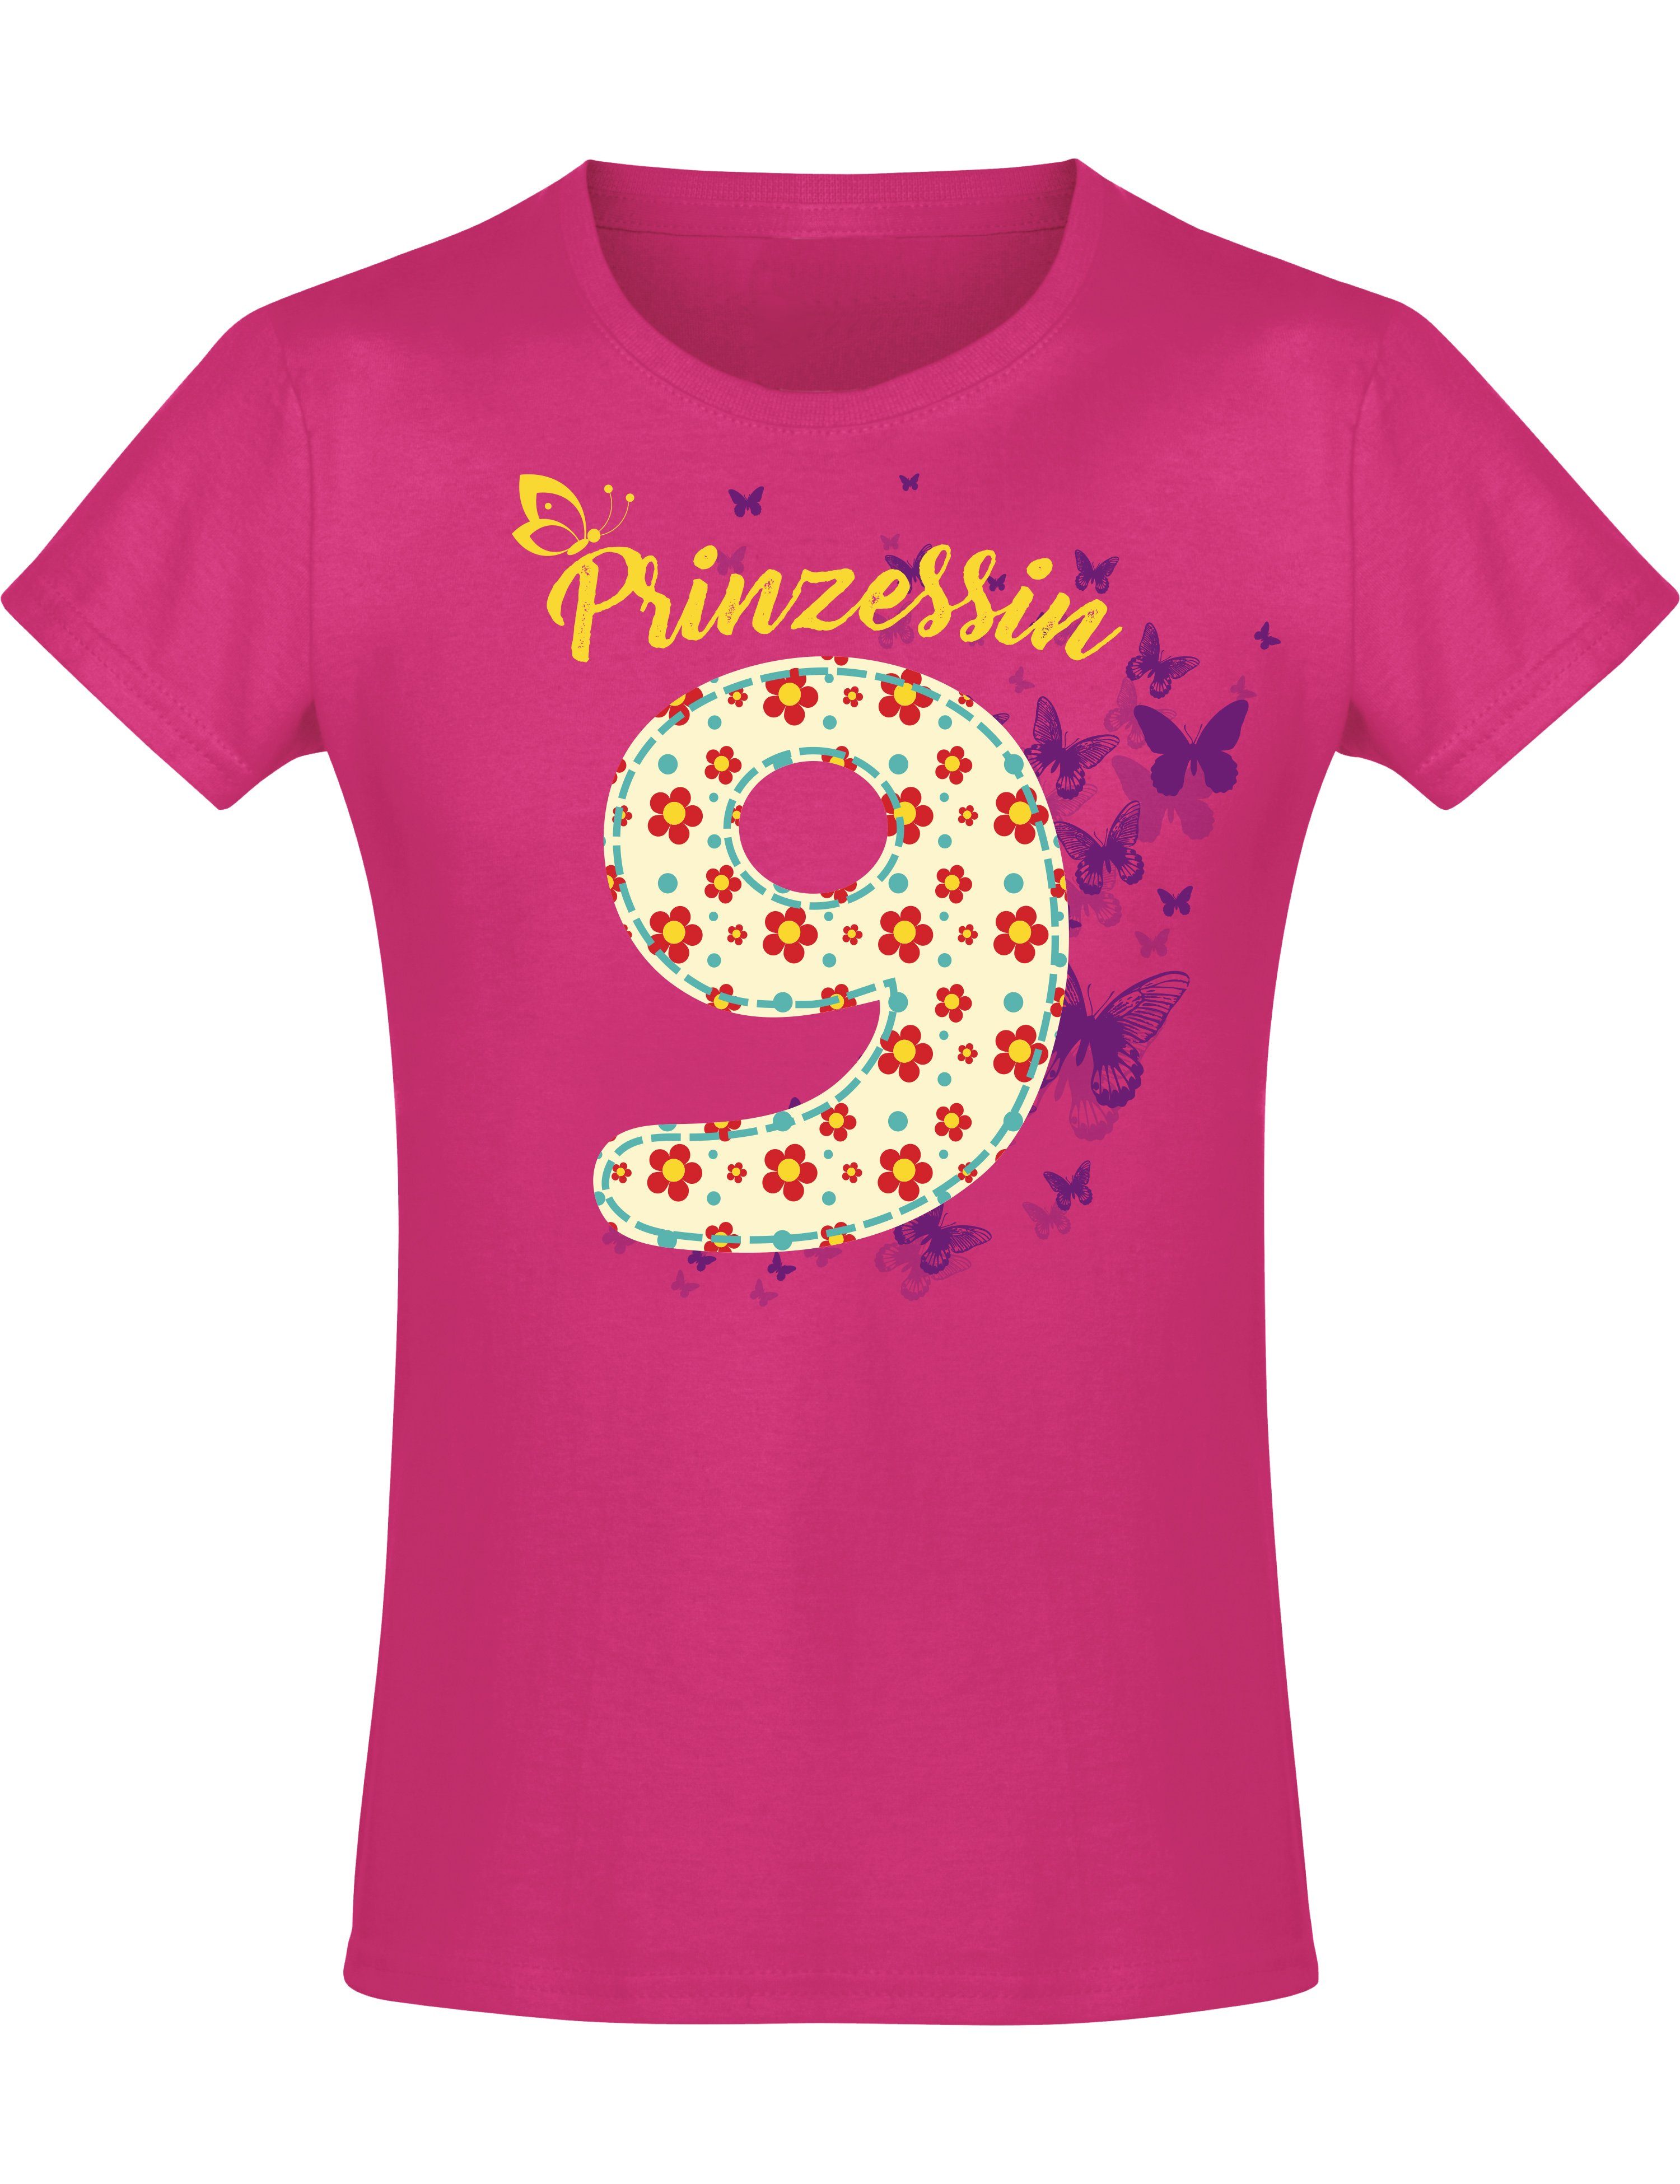 Vortrefflich Baddery Print-Shirt Geburstagsgeschenk mit Mädchen Jahre 9 hochwertiger aus für Siebdruck, Blumen, Baumwolle 